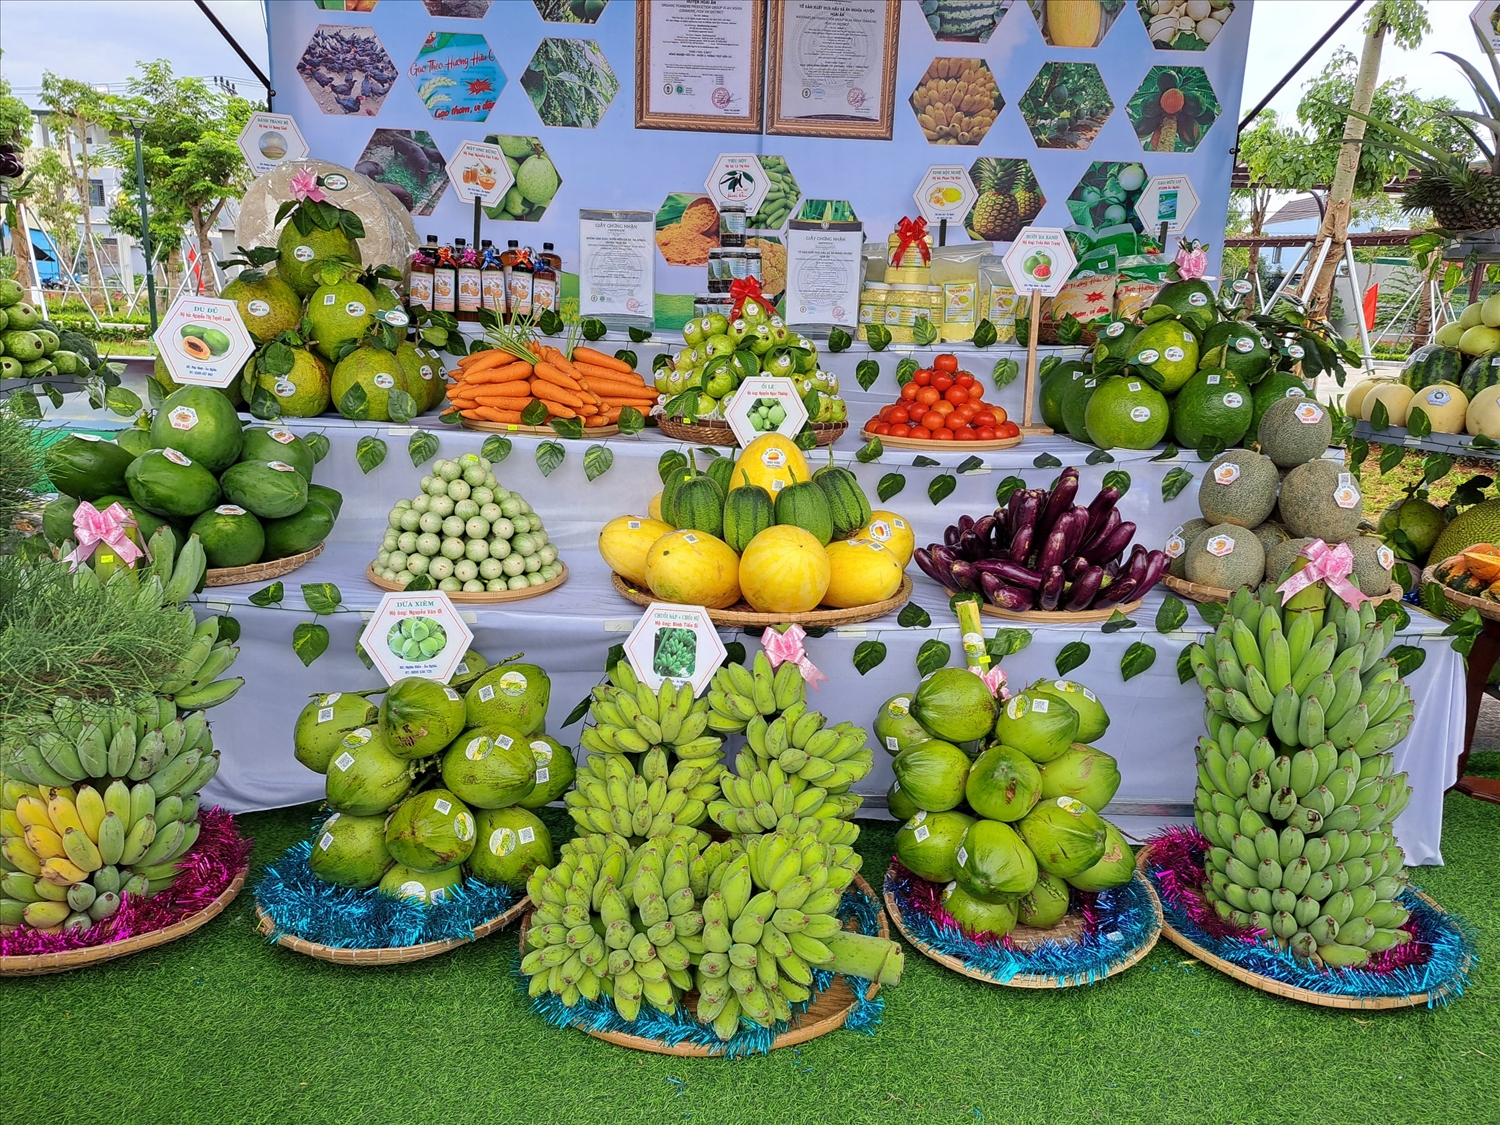 Hội chợ nông sản là một trong những cơ hội quảng bá hình ảnh trái cây Hoài Ân đến với người tiêu dùng trong và ngoài nước